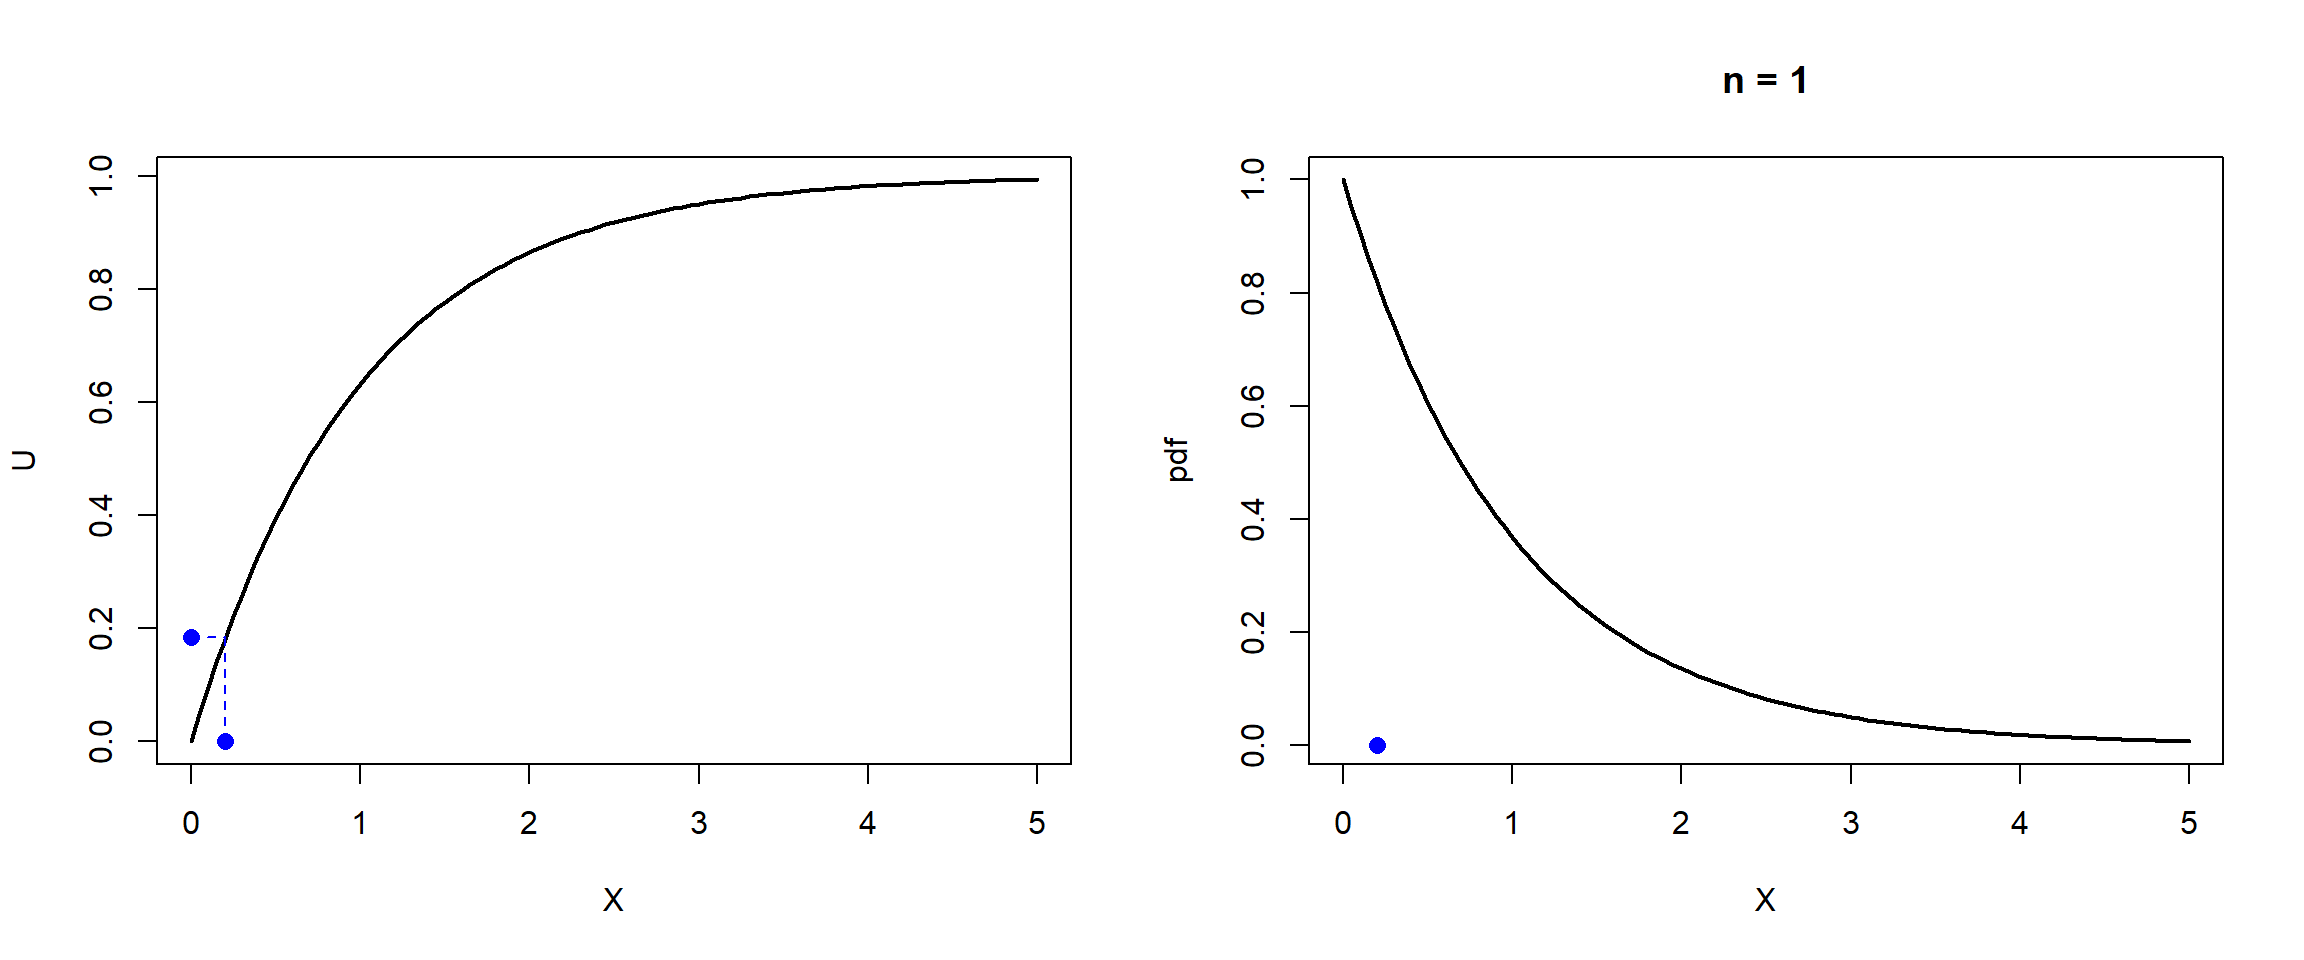 Ilustración de la simulación de una distribución exponencial por el método de inversión.